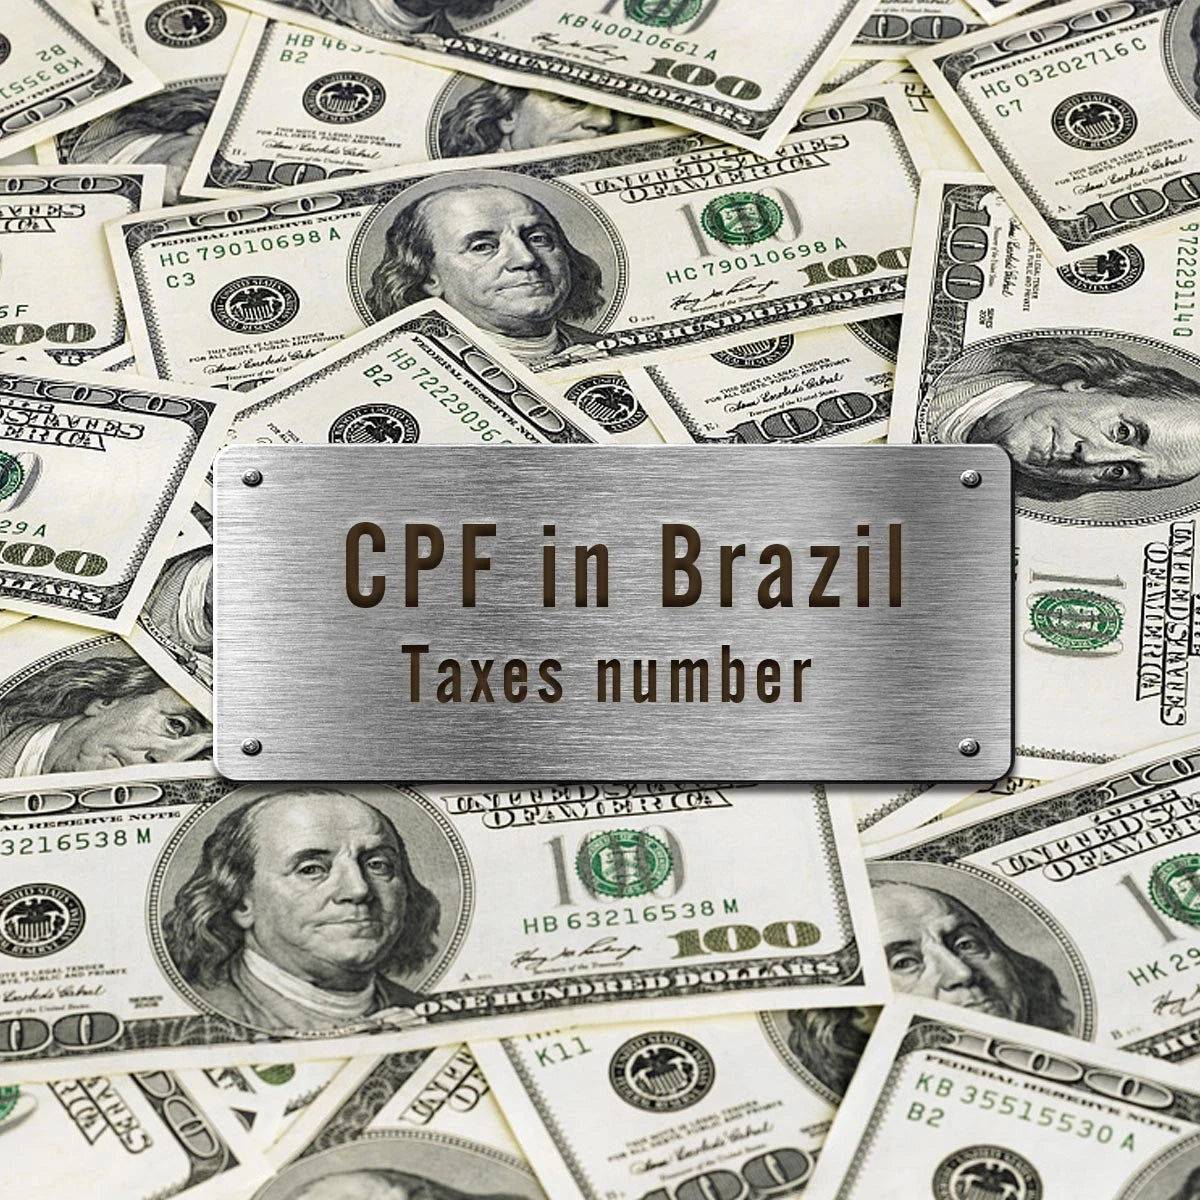 Todos los pedidos (Brasil) necesitan el número de identificación fiscal (CPF)